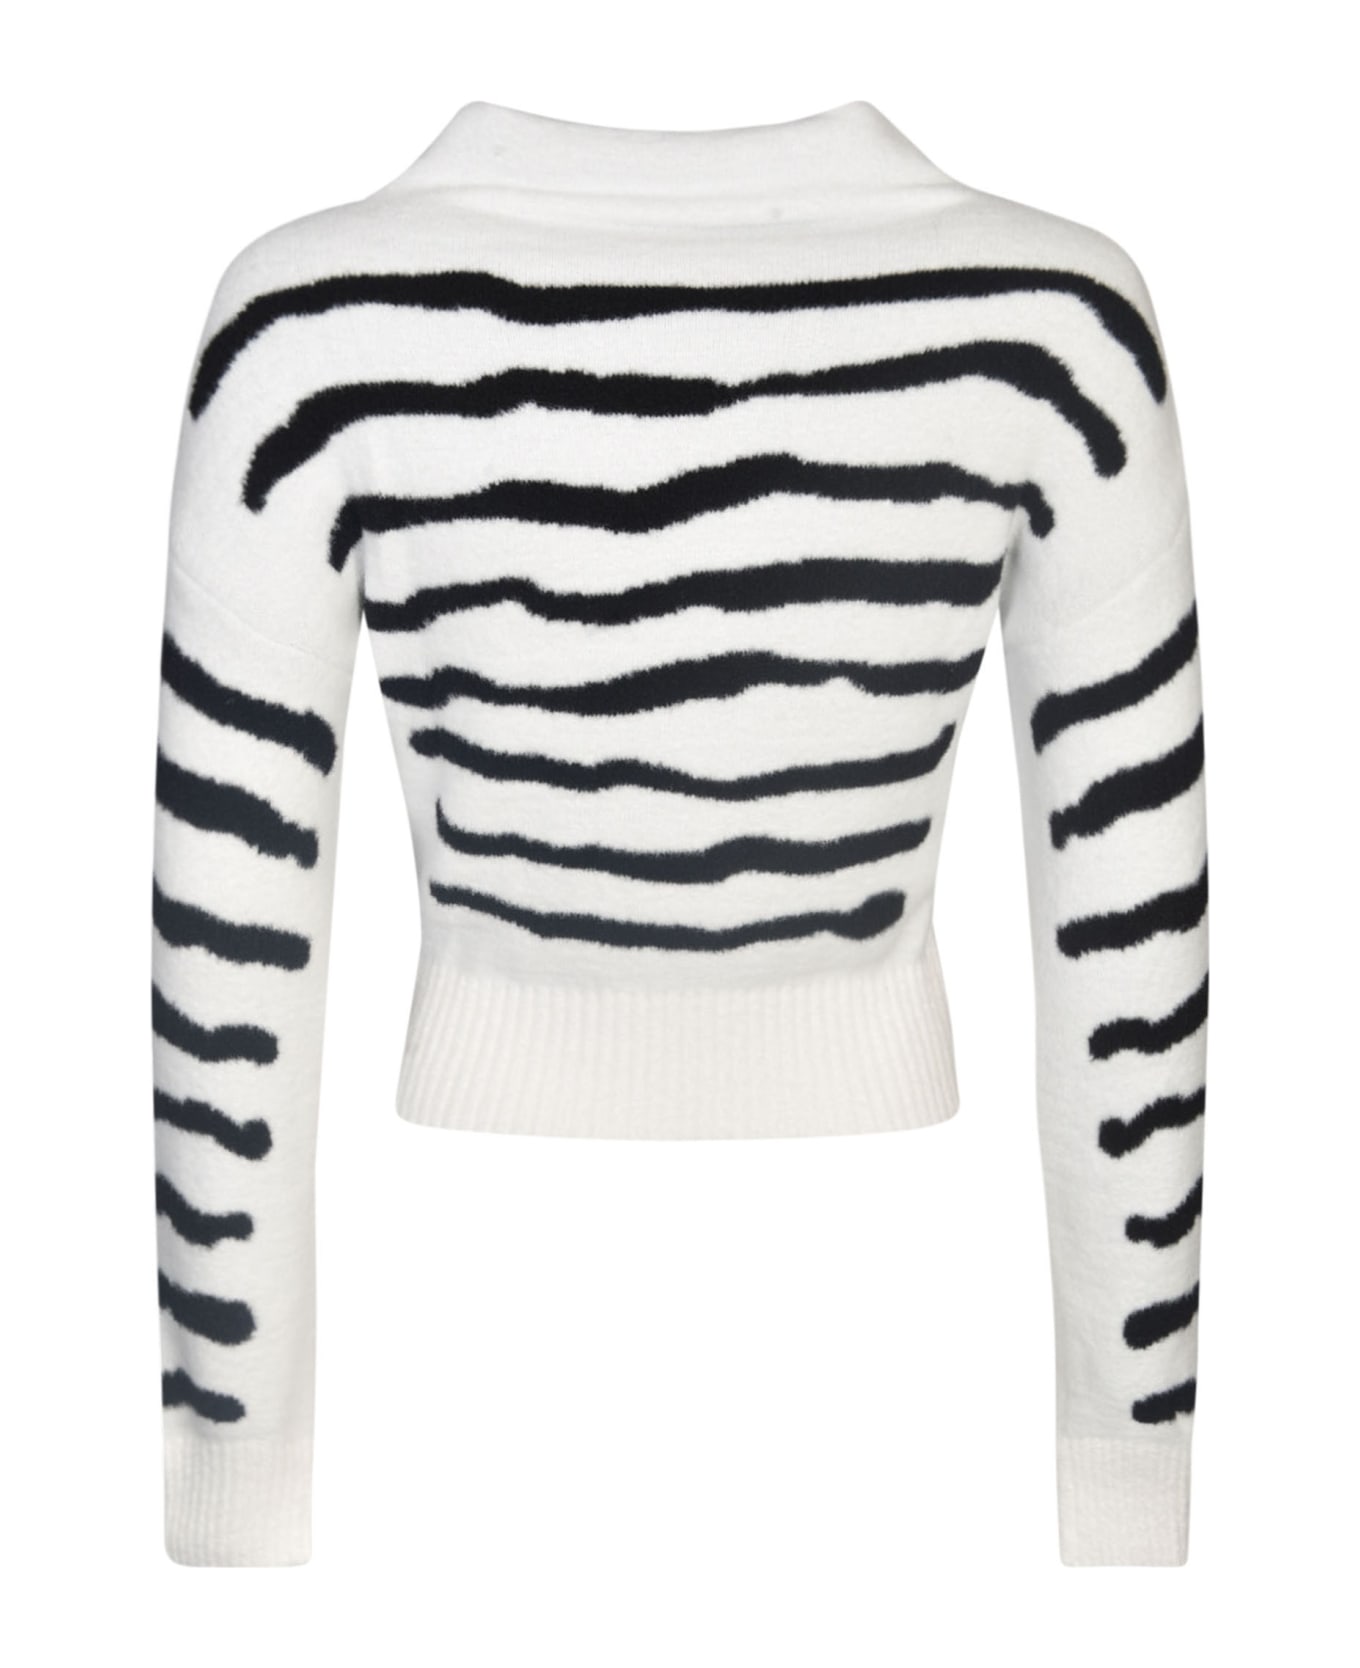 Philosophy di Lorenzo Serafini Heart Embroidered Zebra Stripe Pullover - White/Black